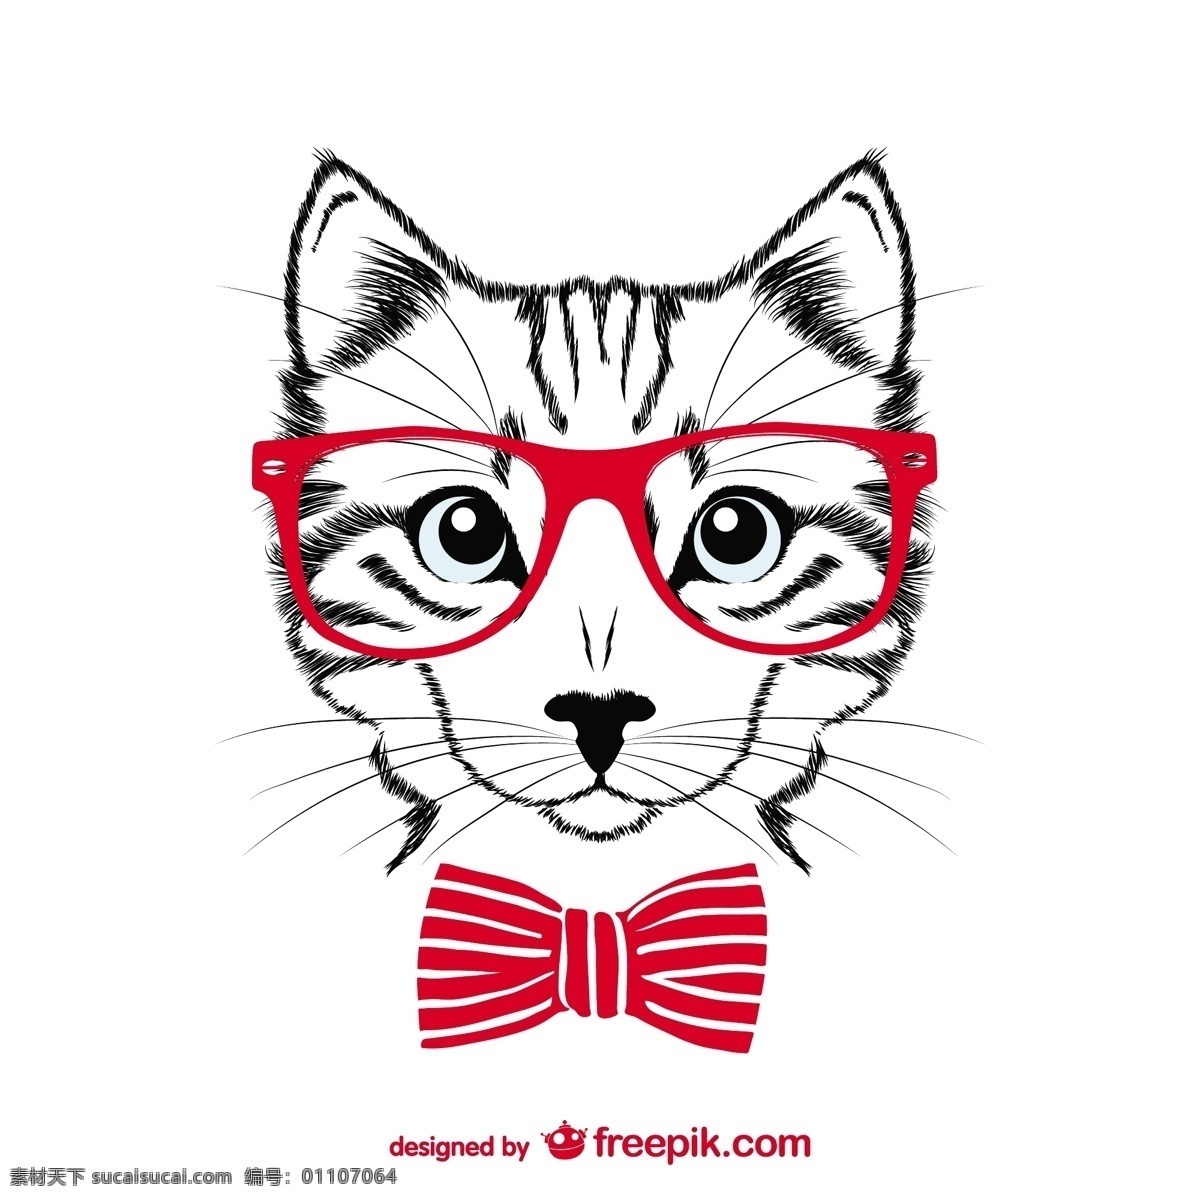 时髦 红色 眼镜 猫 复古 时尚 时髦的设计 模板 动物 垃圾 艺术 可爱的图形 弓 布局优雅 平面设计 素描 白色